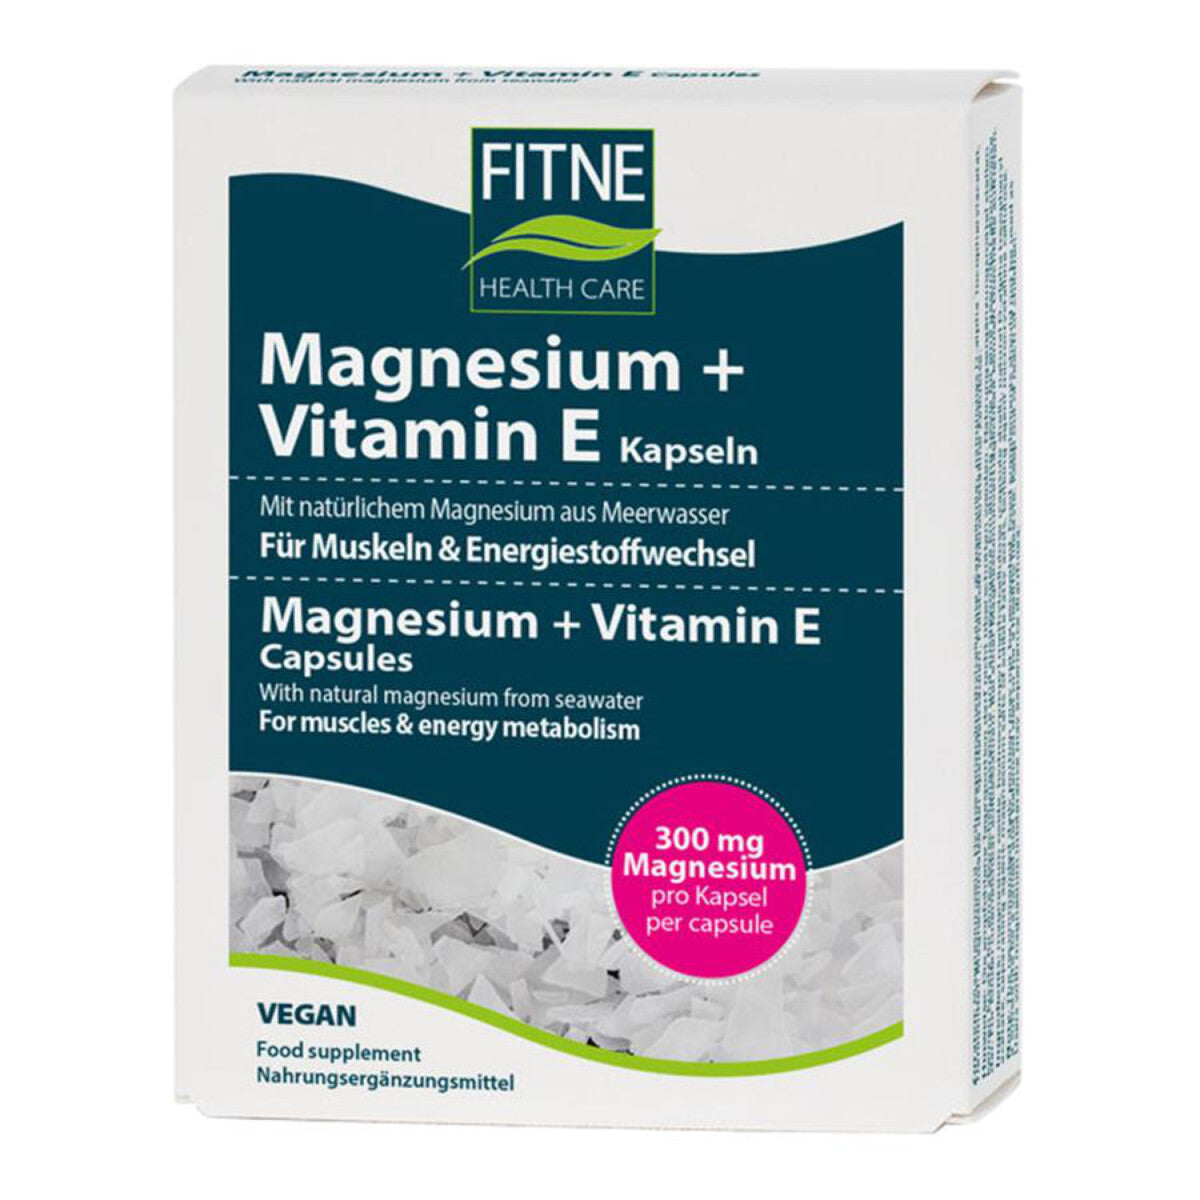 FITNE Magnesium + Vitamin E Kapseln - 40 g